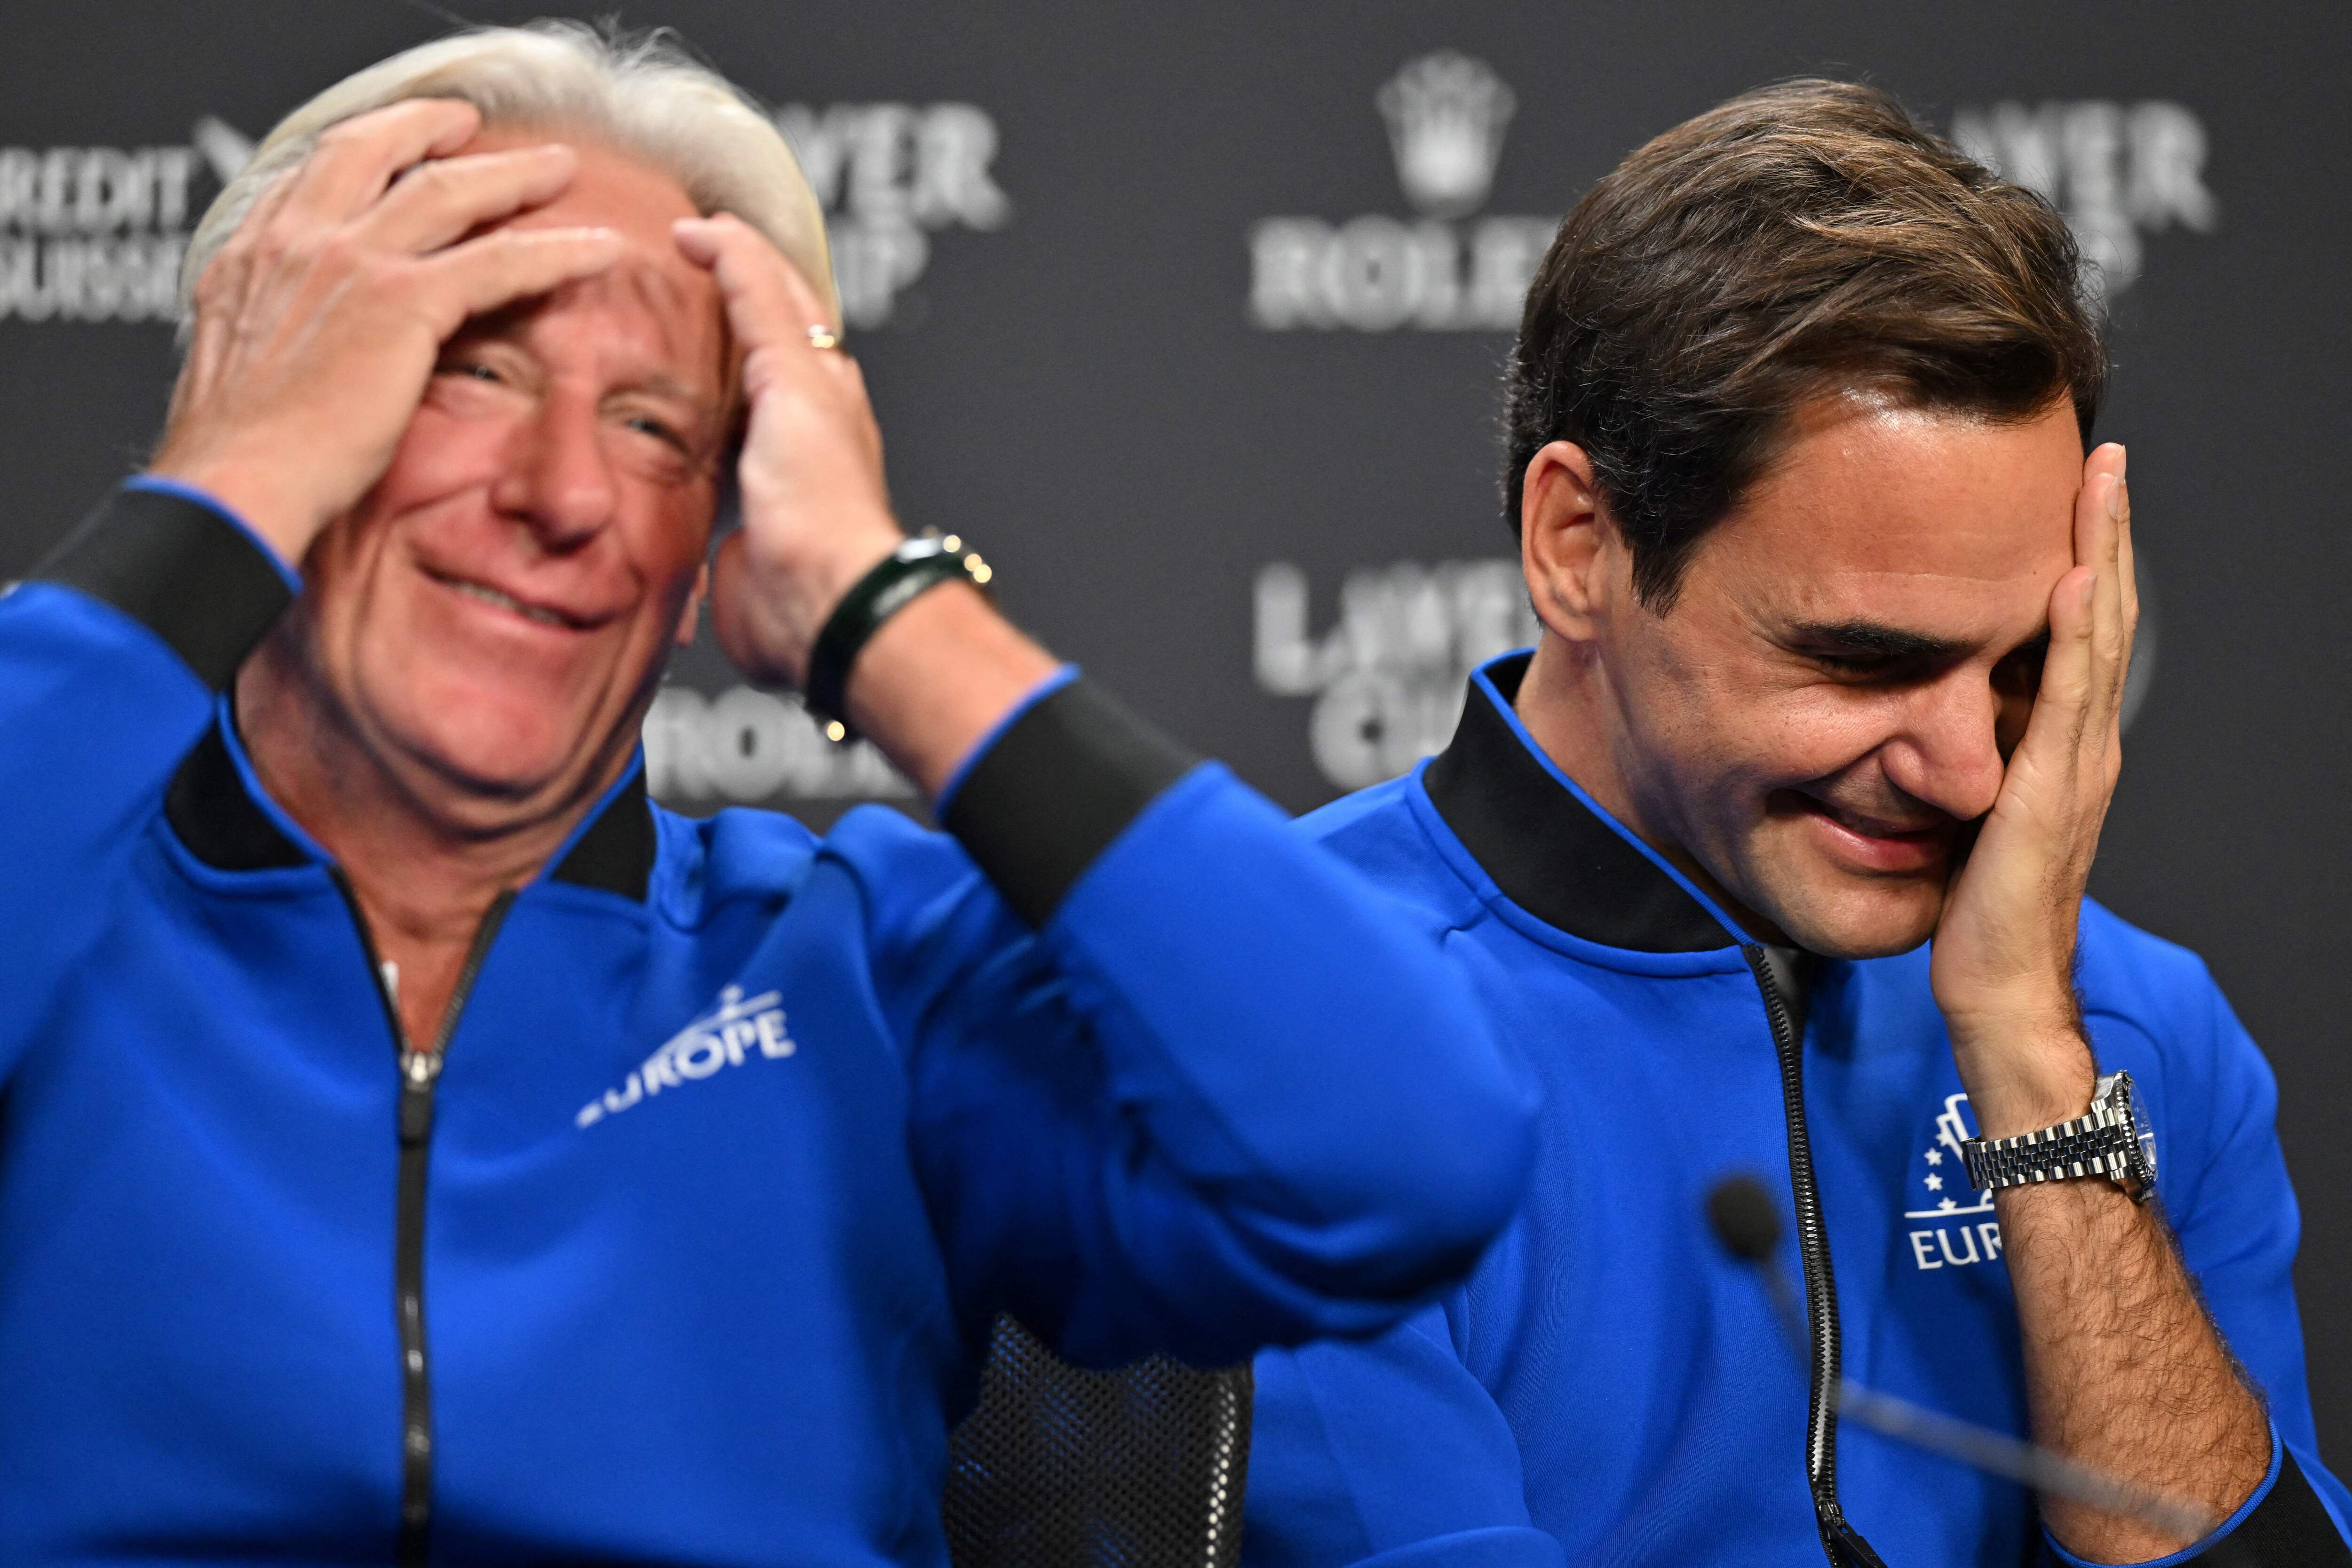  Roger Federer (a la izquierda) y el entrenador del equipo europeo Bjorn Borg, en un momento de la rueda de prensa.